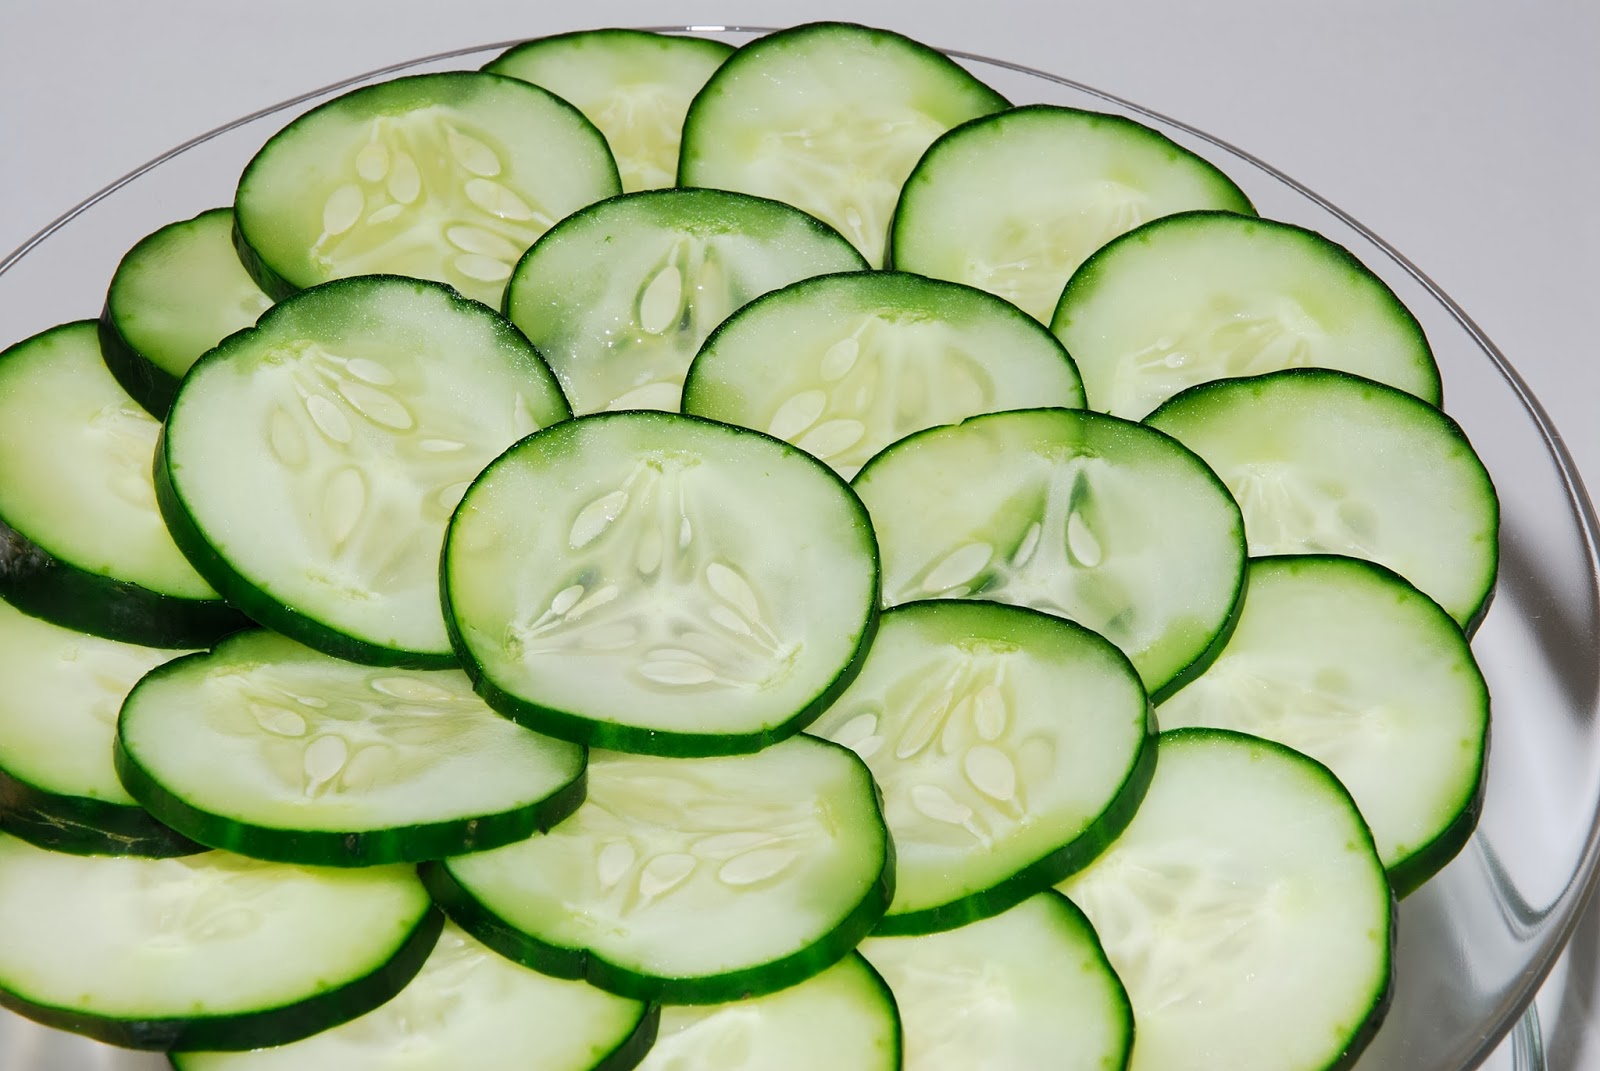 Cucumbers reduce body heat